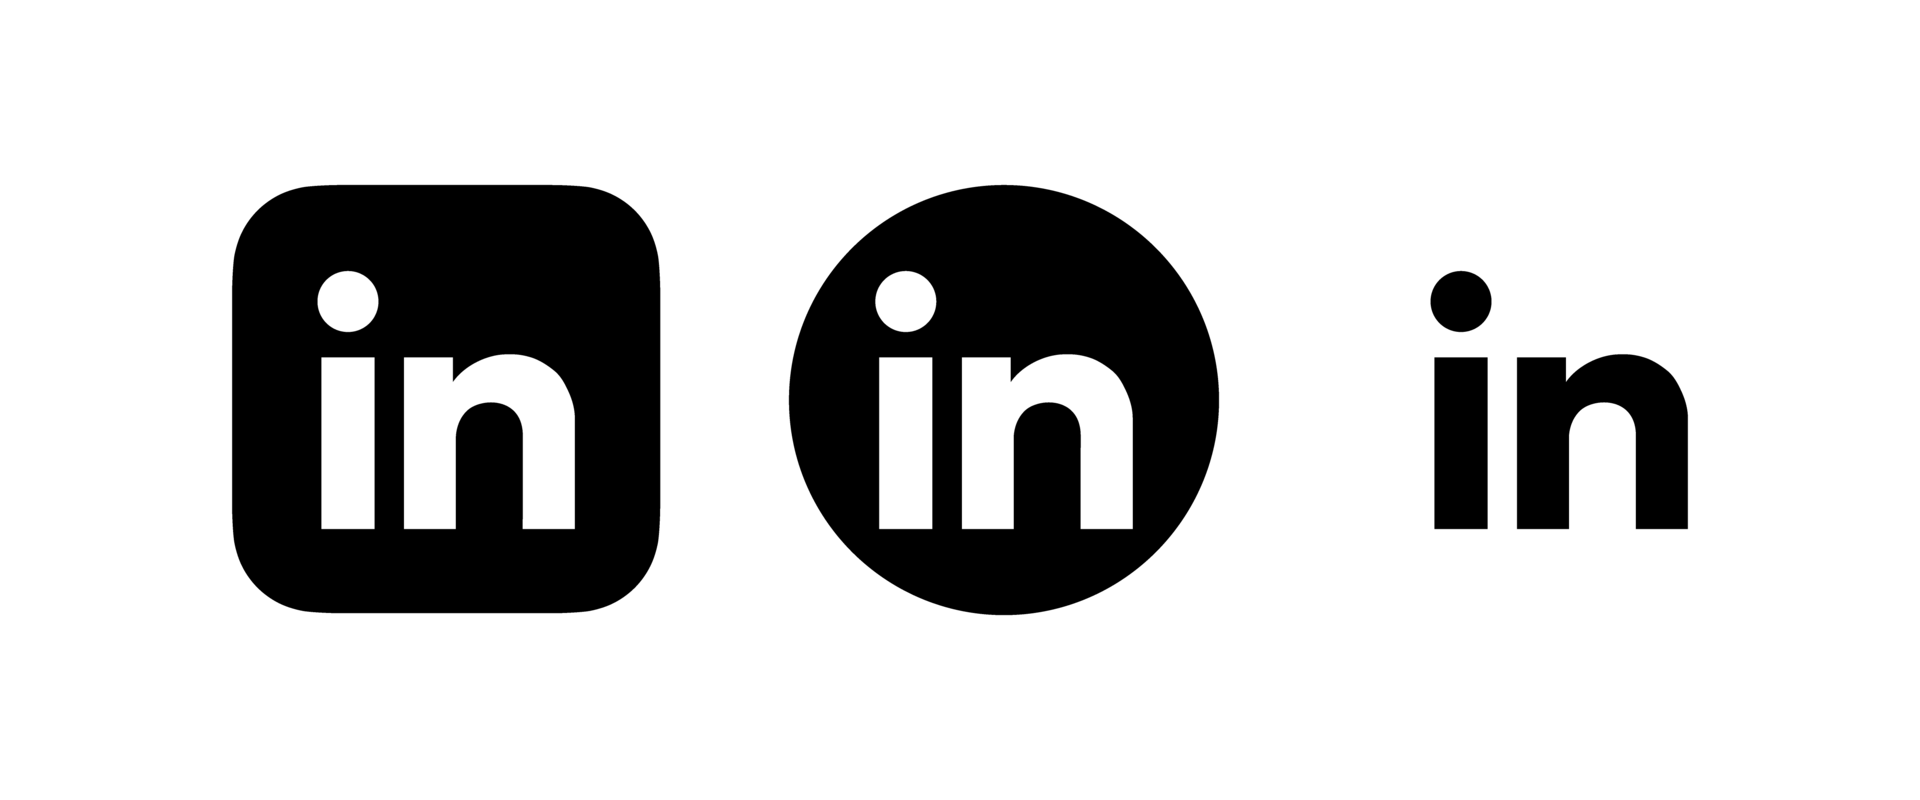 logo LinkedIn png, icône LinkedIn png transparent